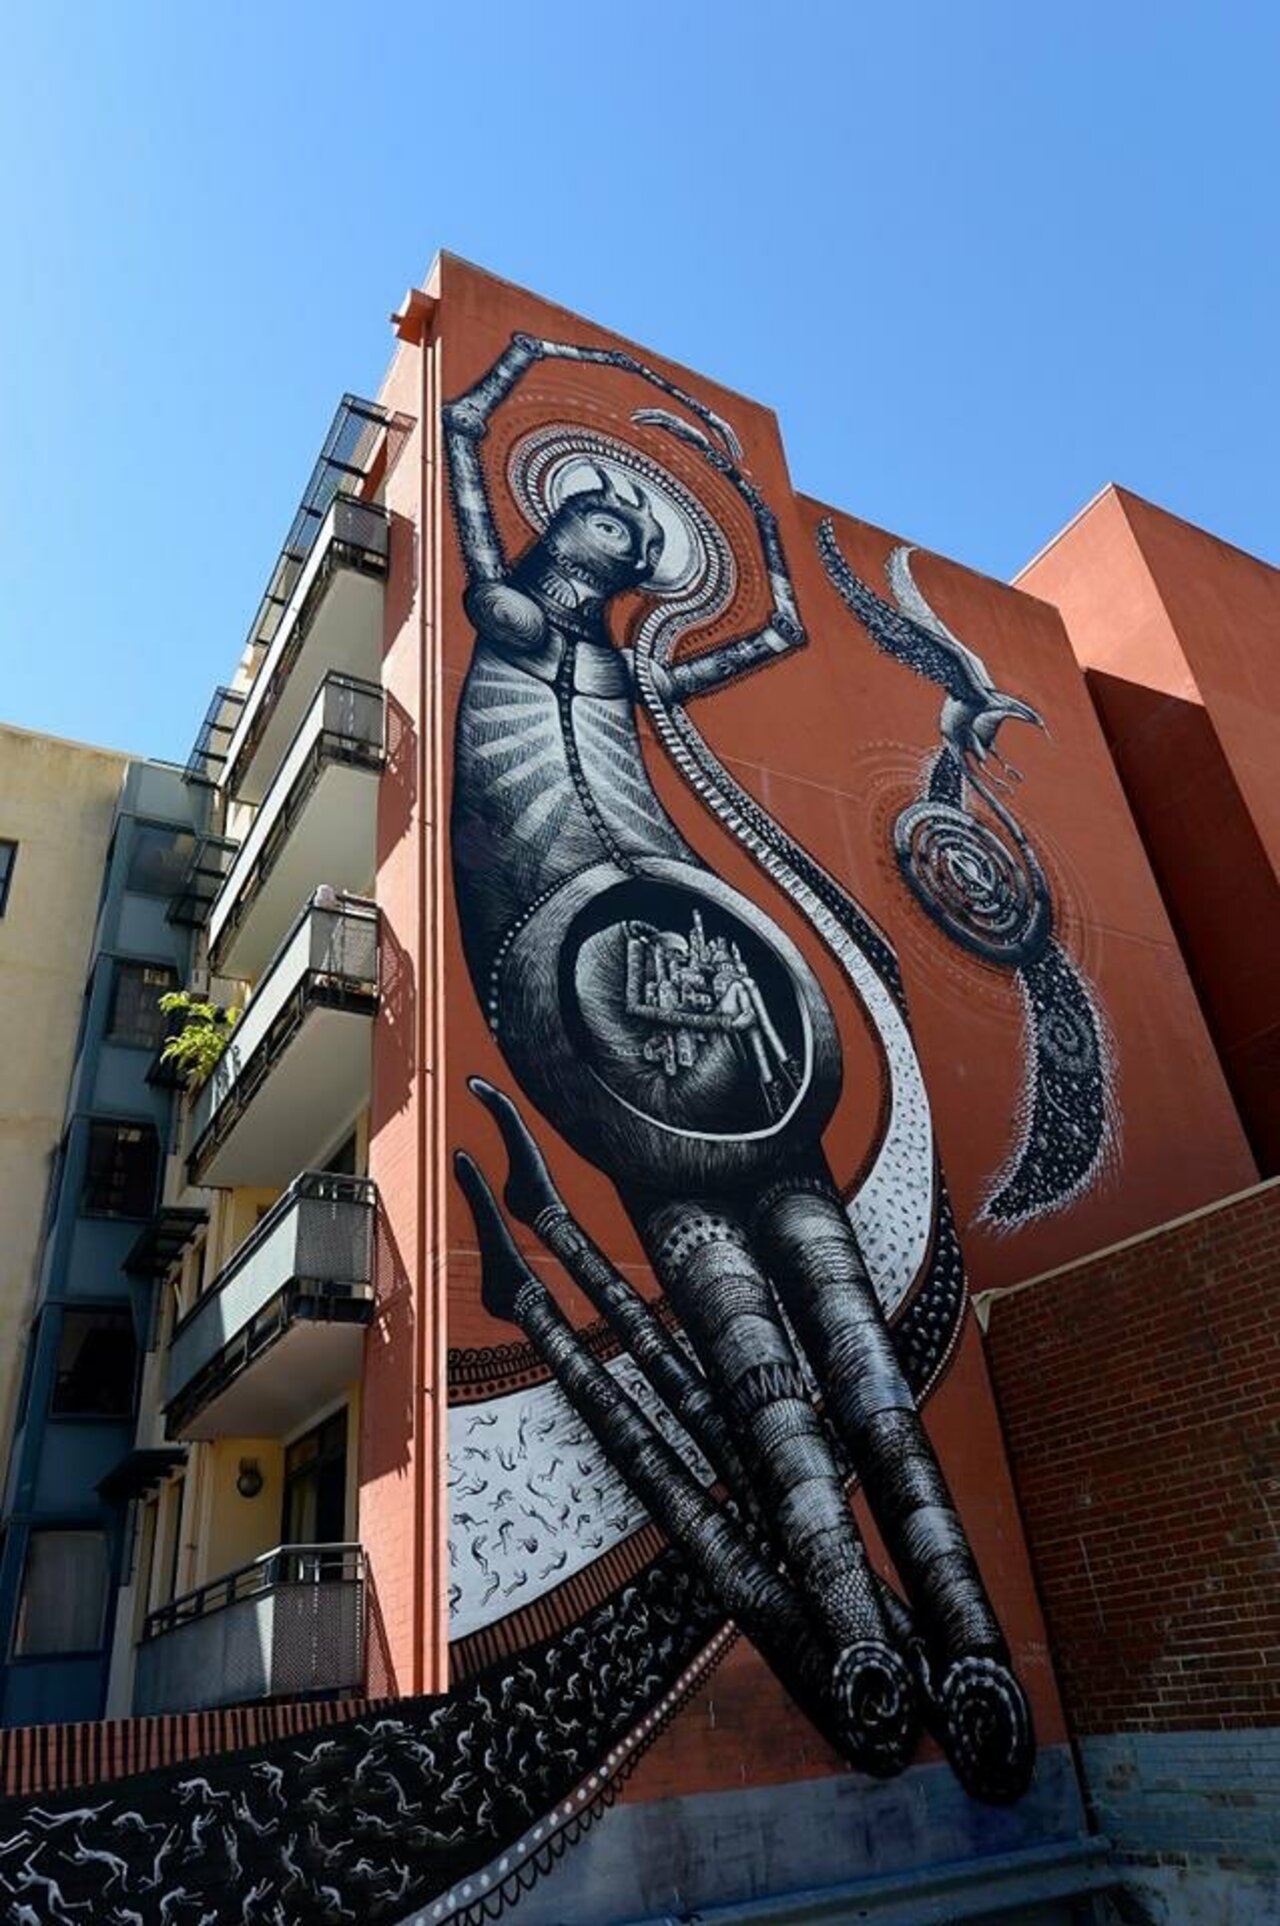 #Mural by Phlegm #Perth #Australia #Streetart #urbanart #graffiti #art https://t.co/JBsEoCQbm7